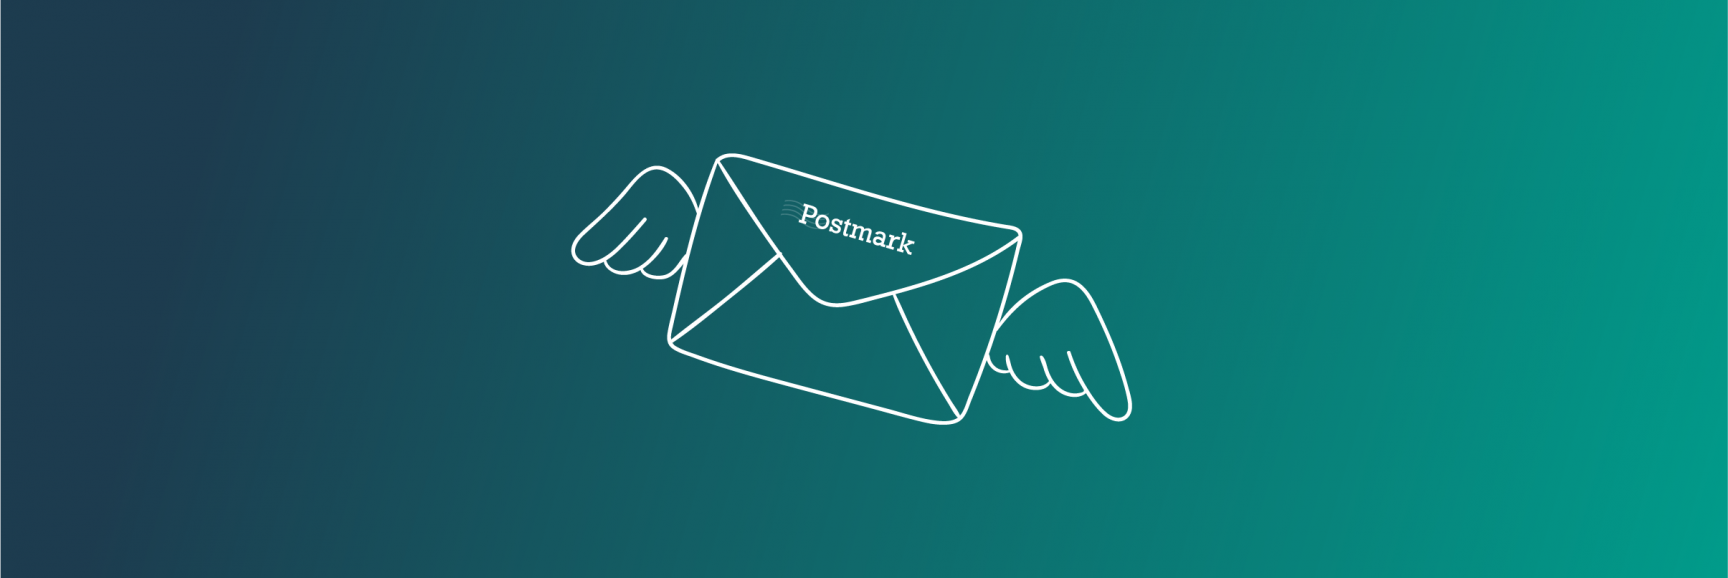 header voor blogpost over beter mailverkeer via postmark